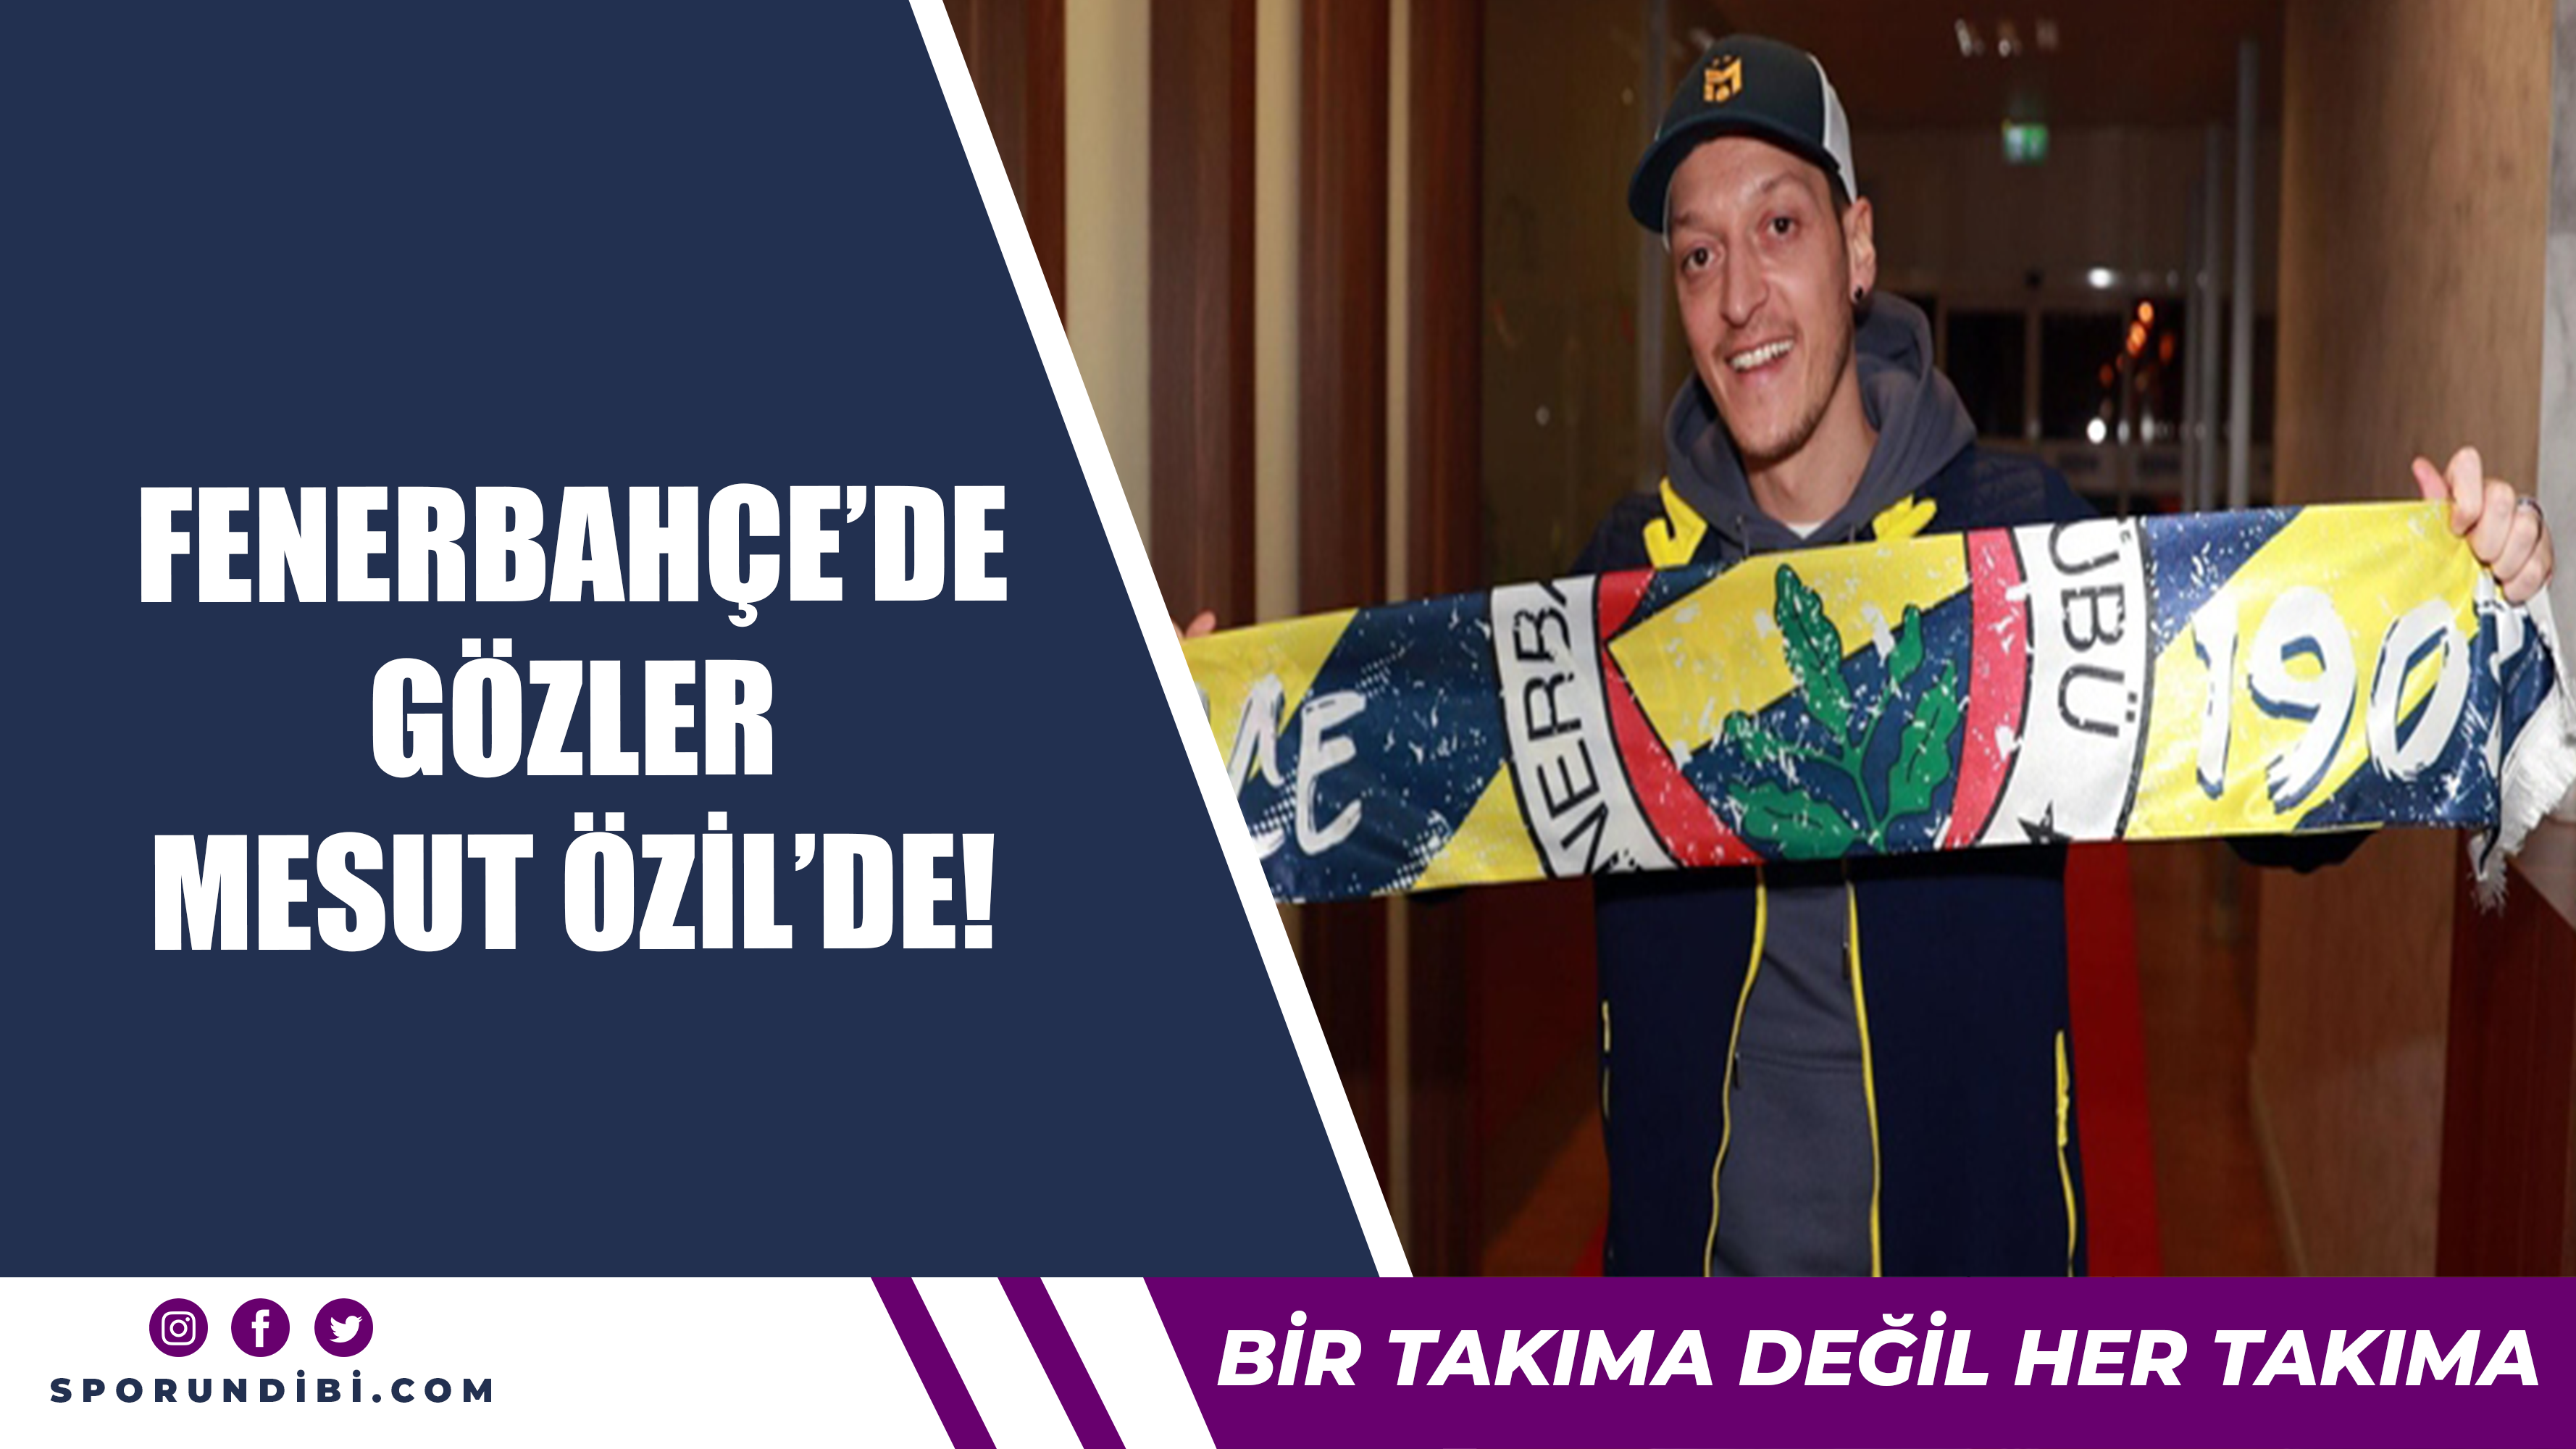 Fenerbahçe'de gözler Mesut Özil'de!